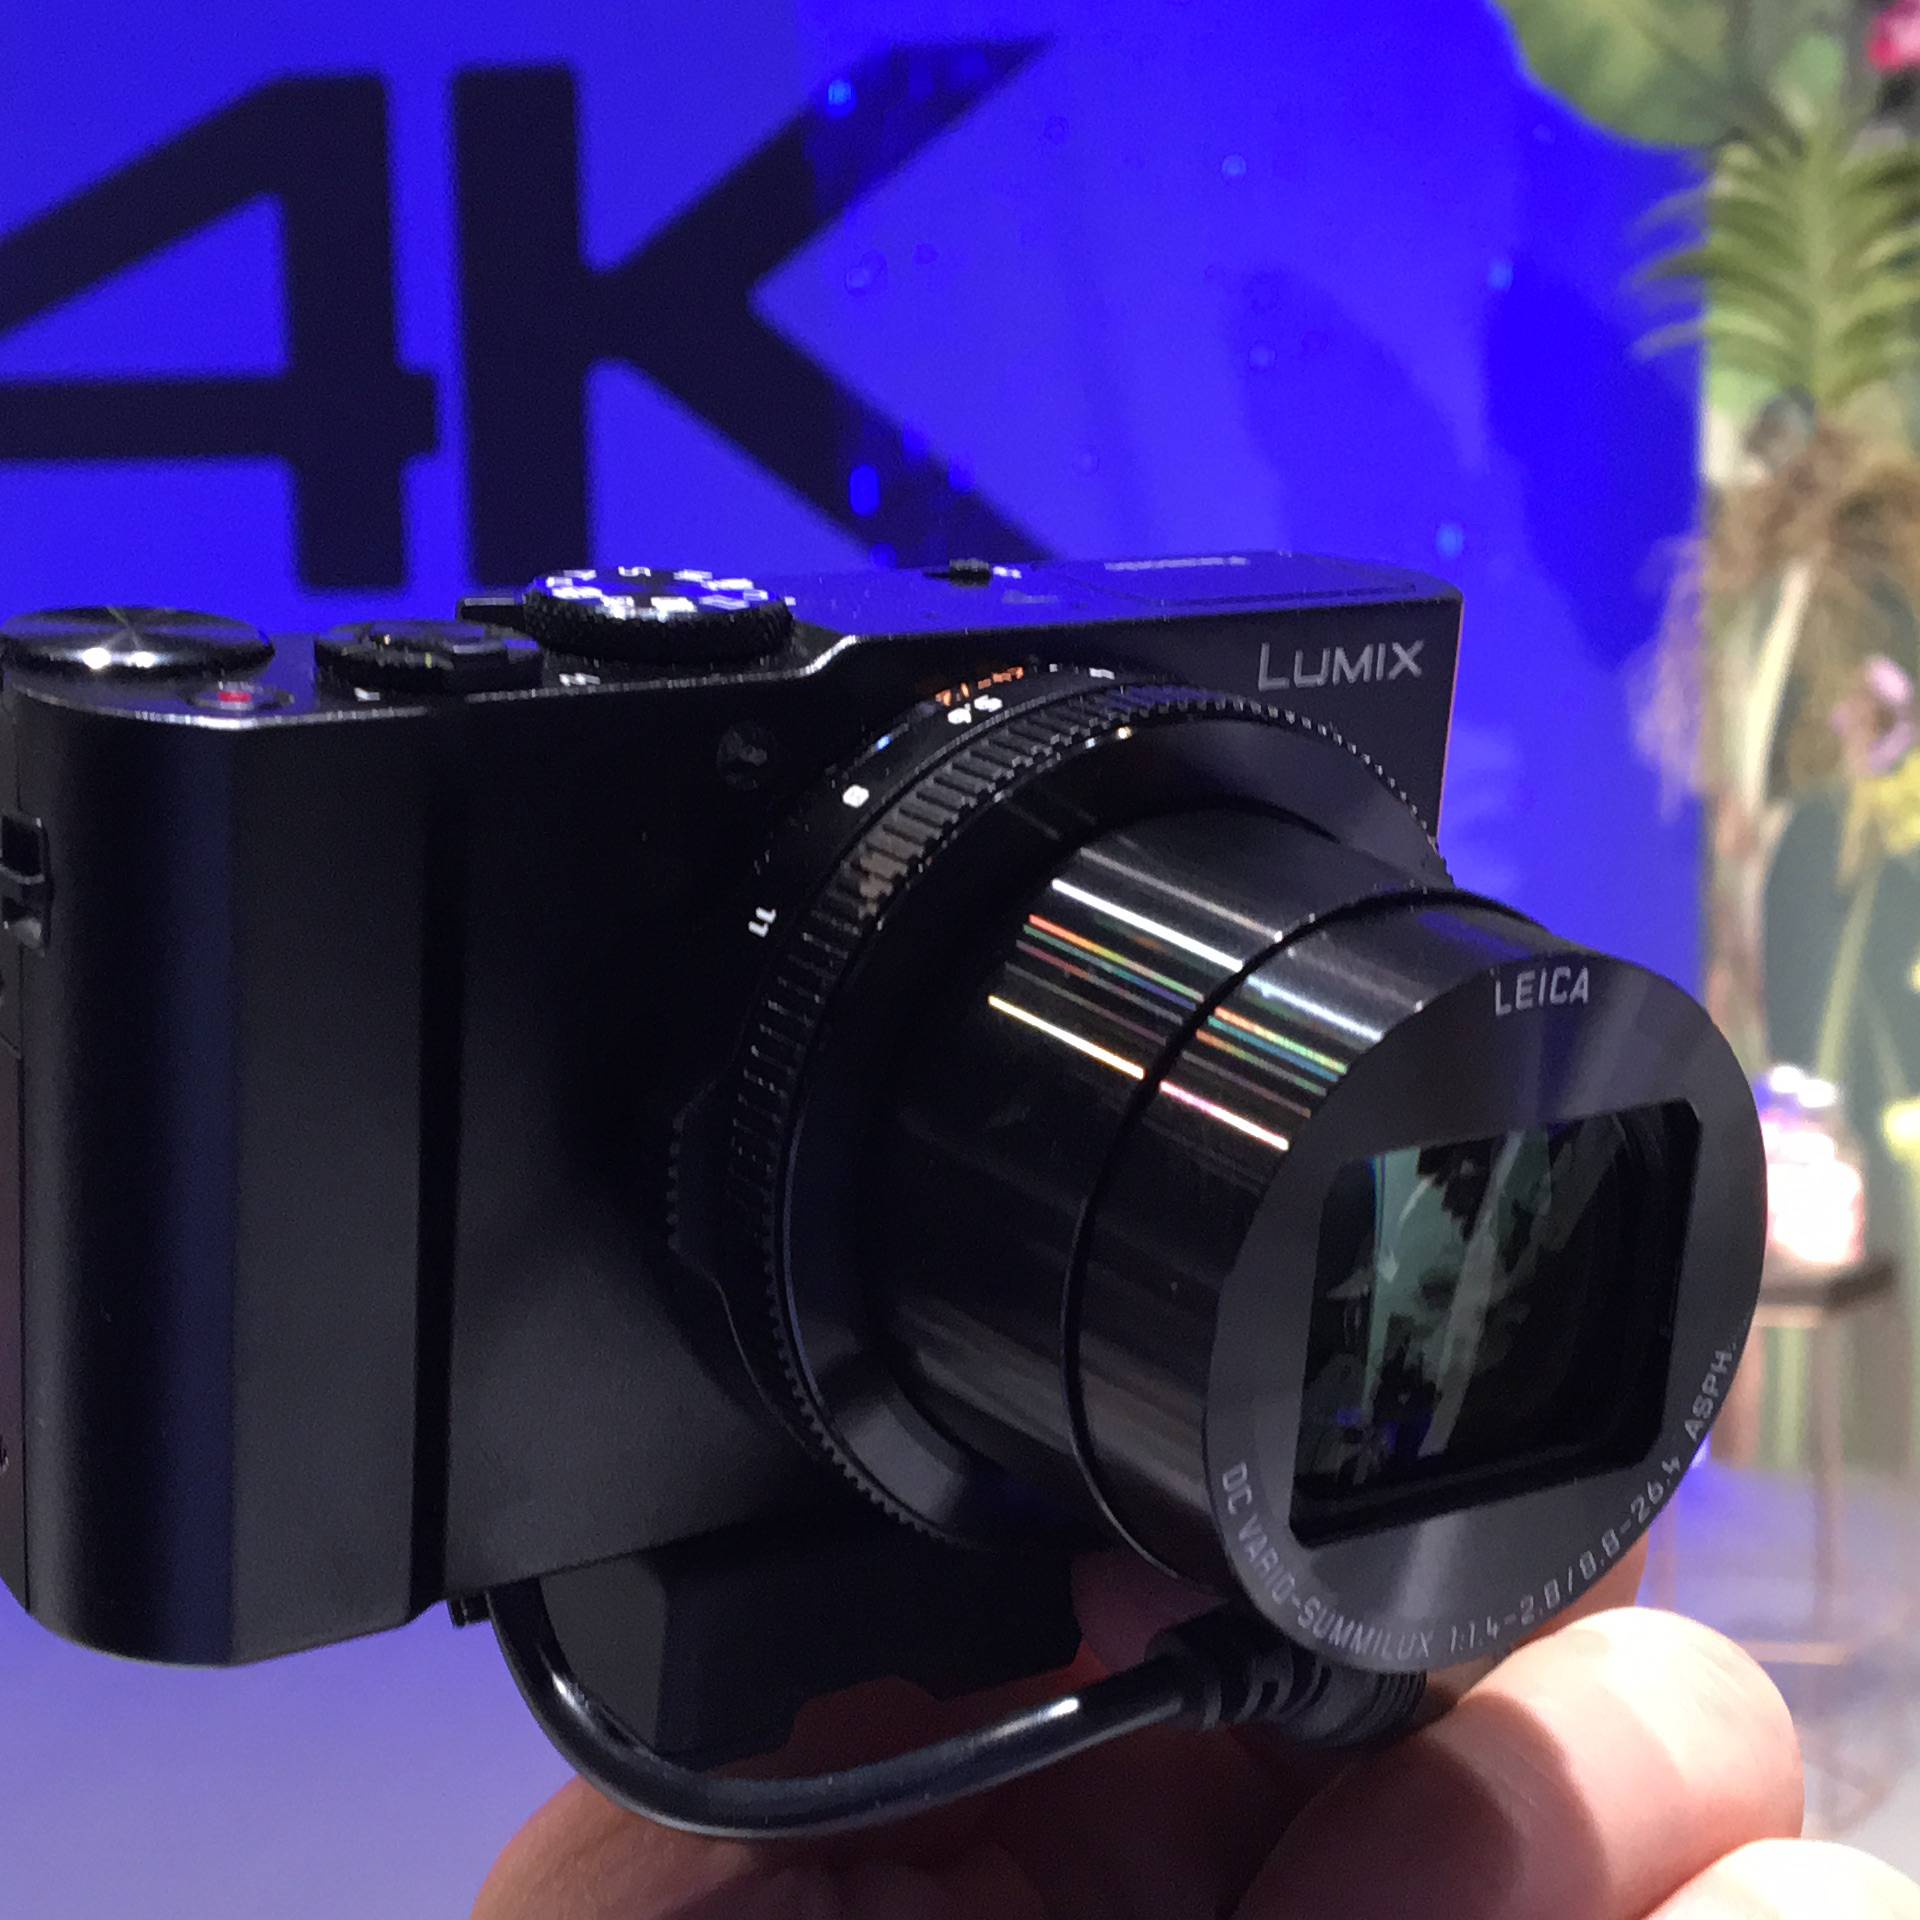 Svi bolji fotići snimaju 4K, a 360 kamere postaju standard